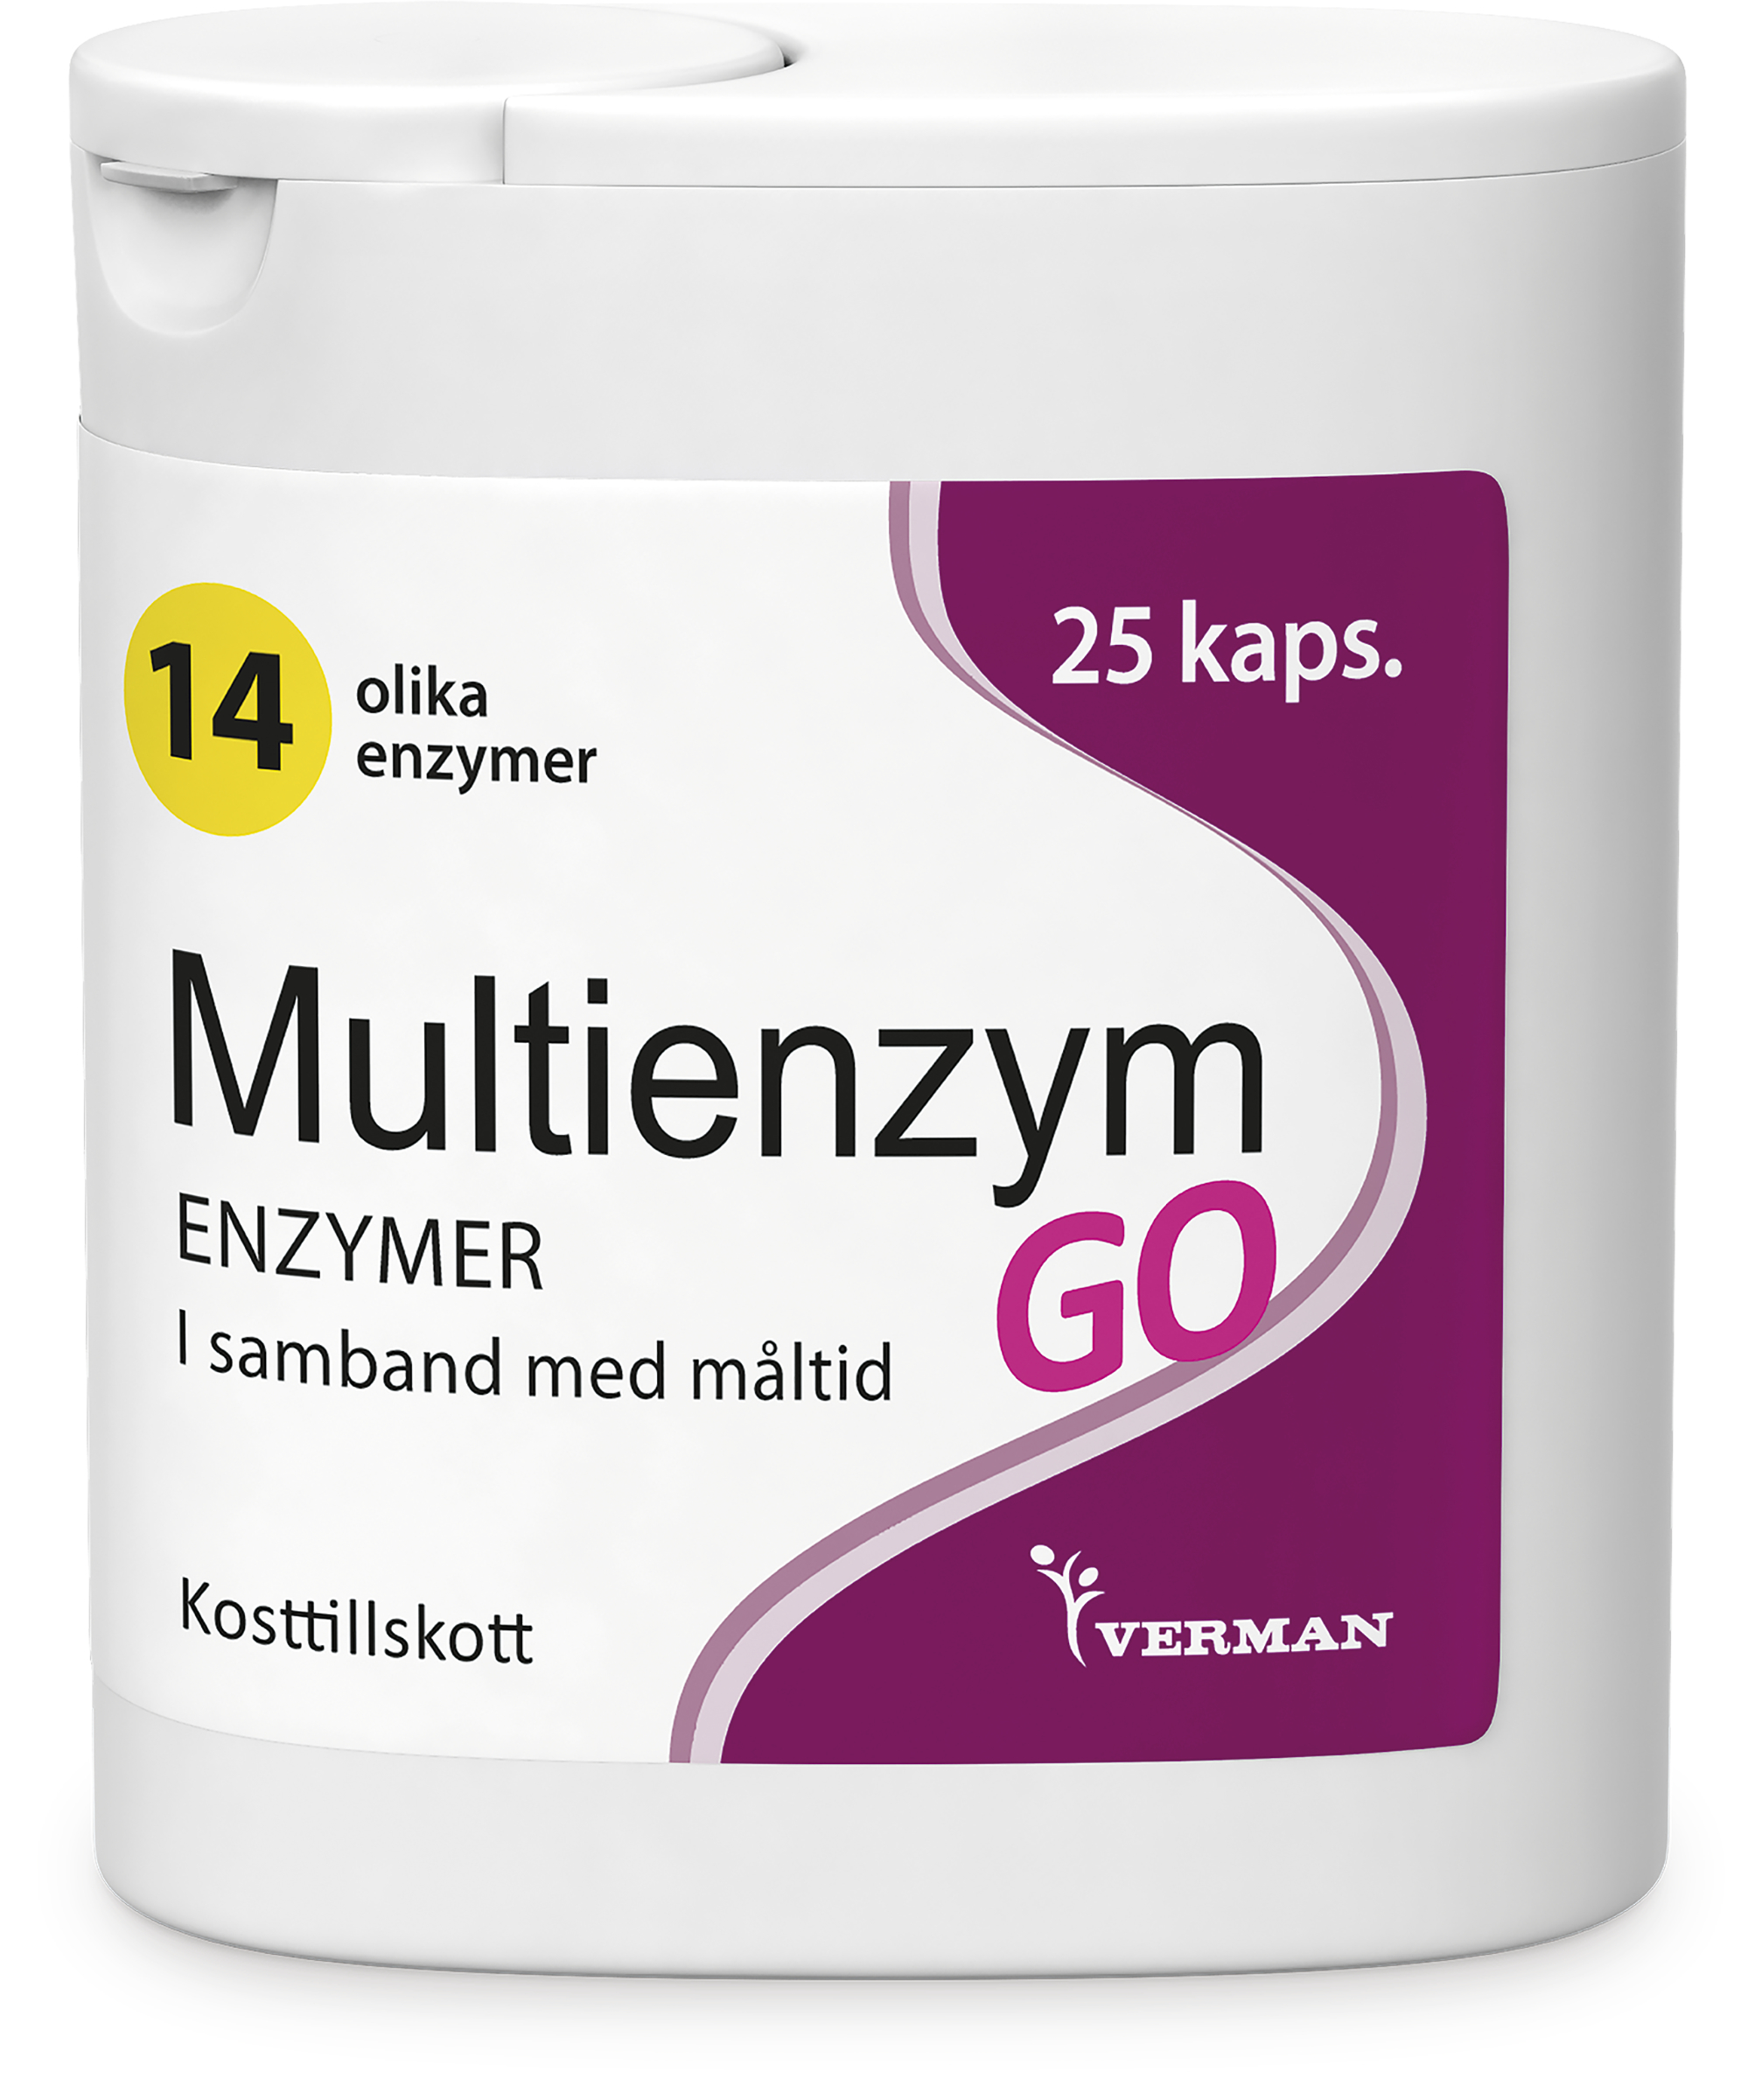 Multienzym GO Matsmältningsenzym 25 st